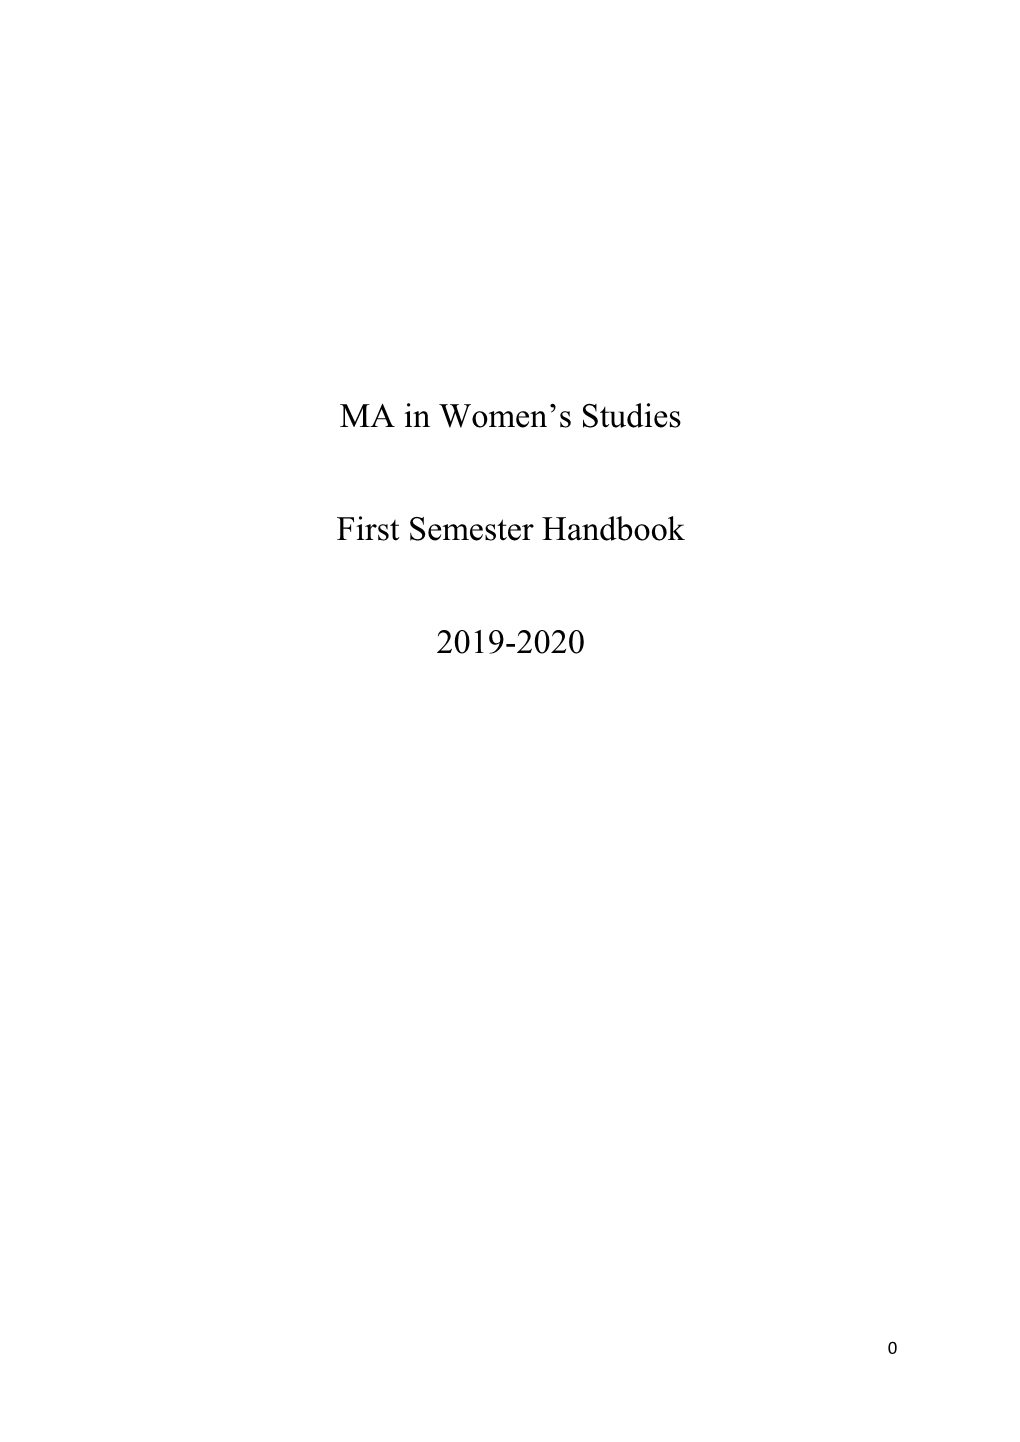 MA in Women's Studies First Semester Handbook 2019-2020